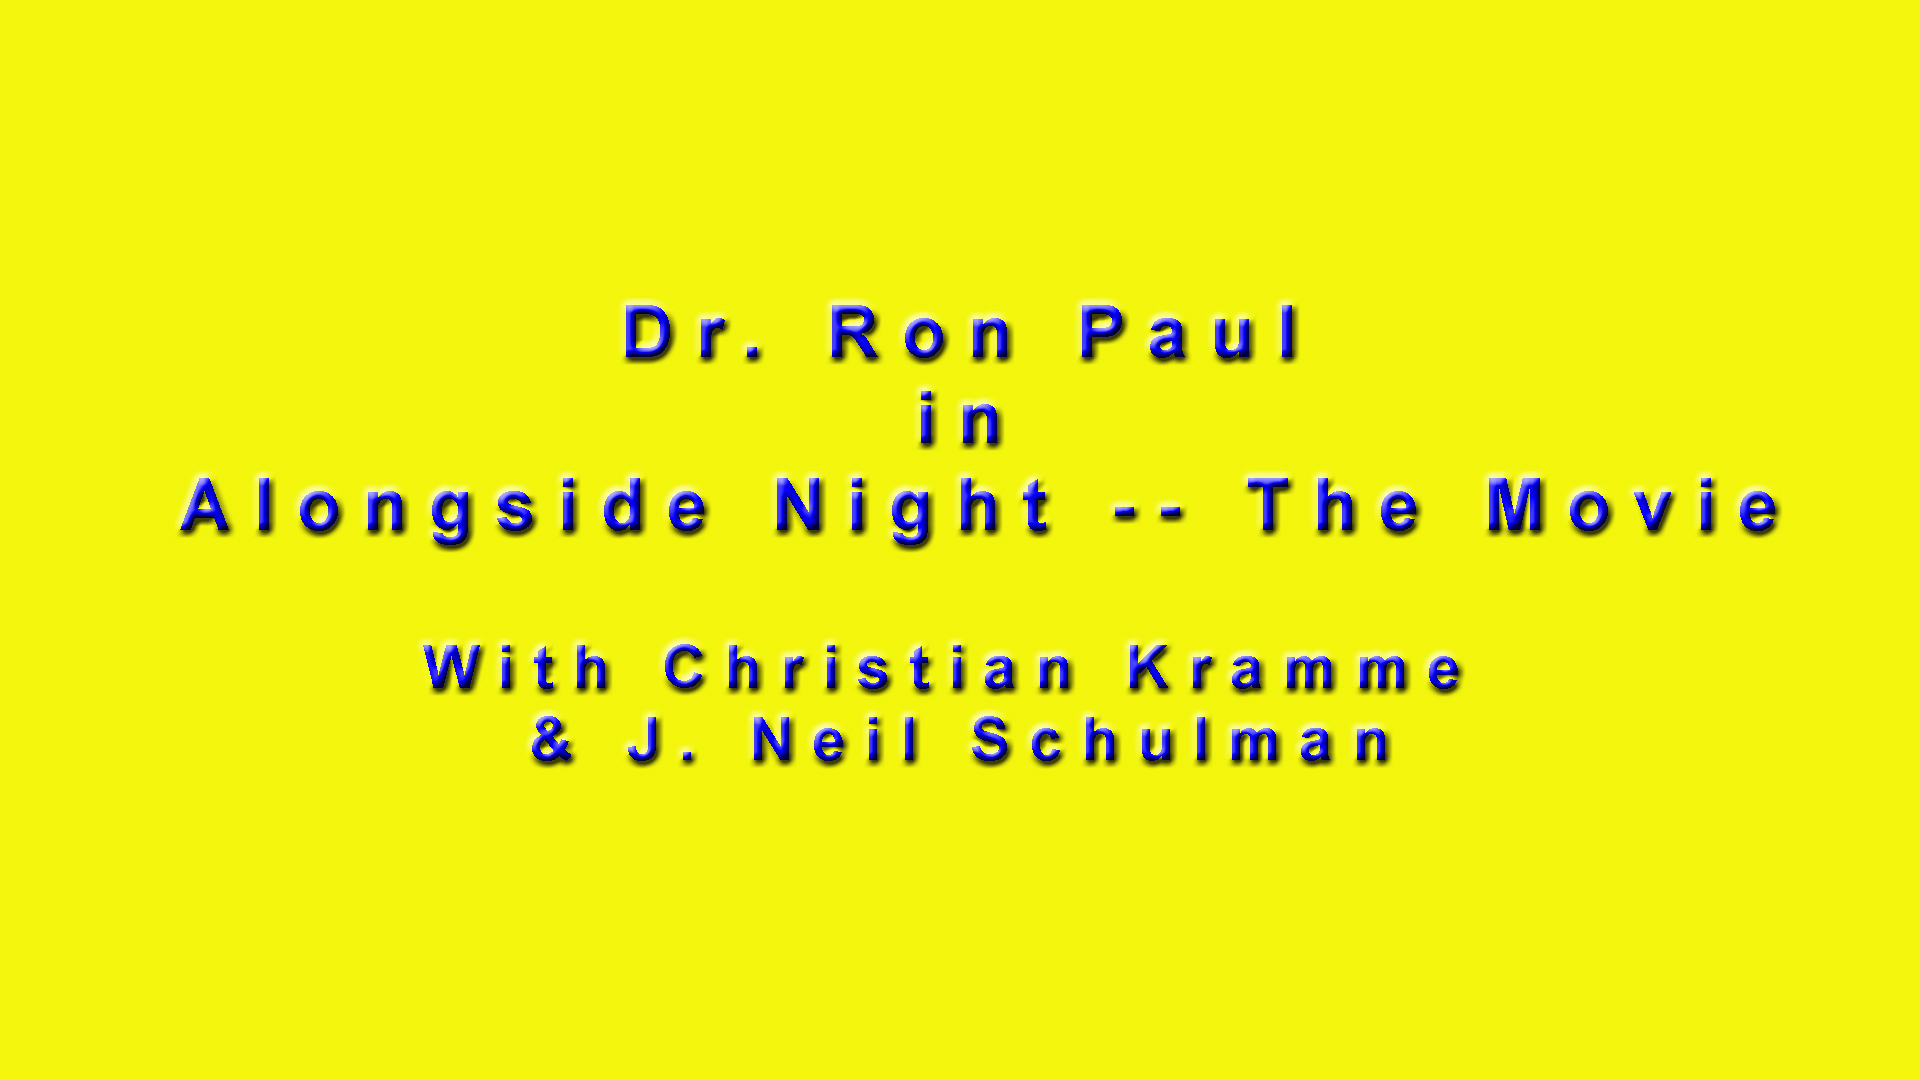 Dr. Ron Paul in Alongside Night Card